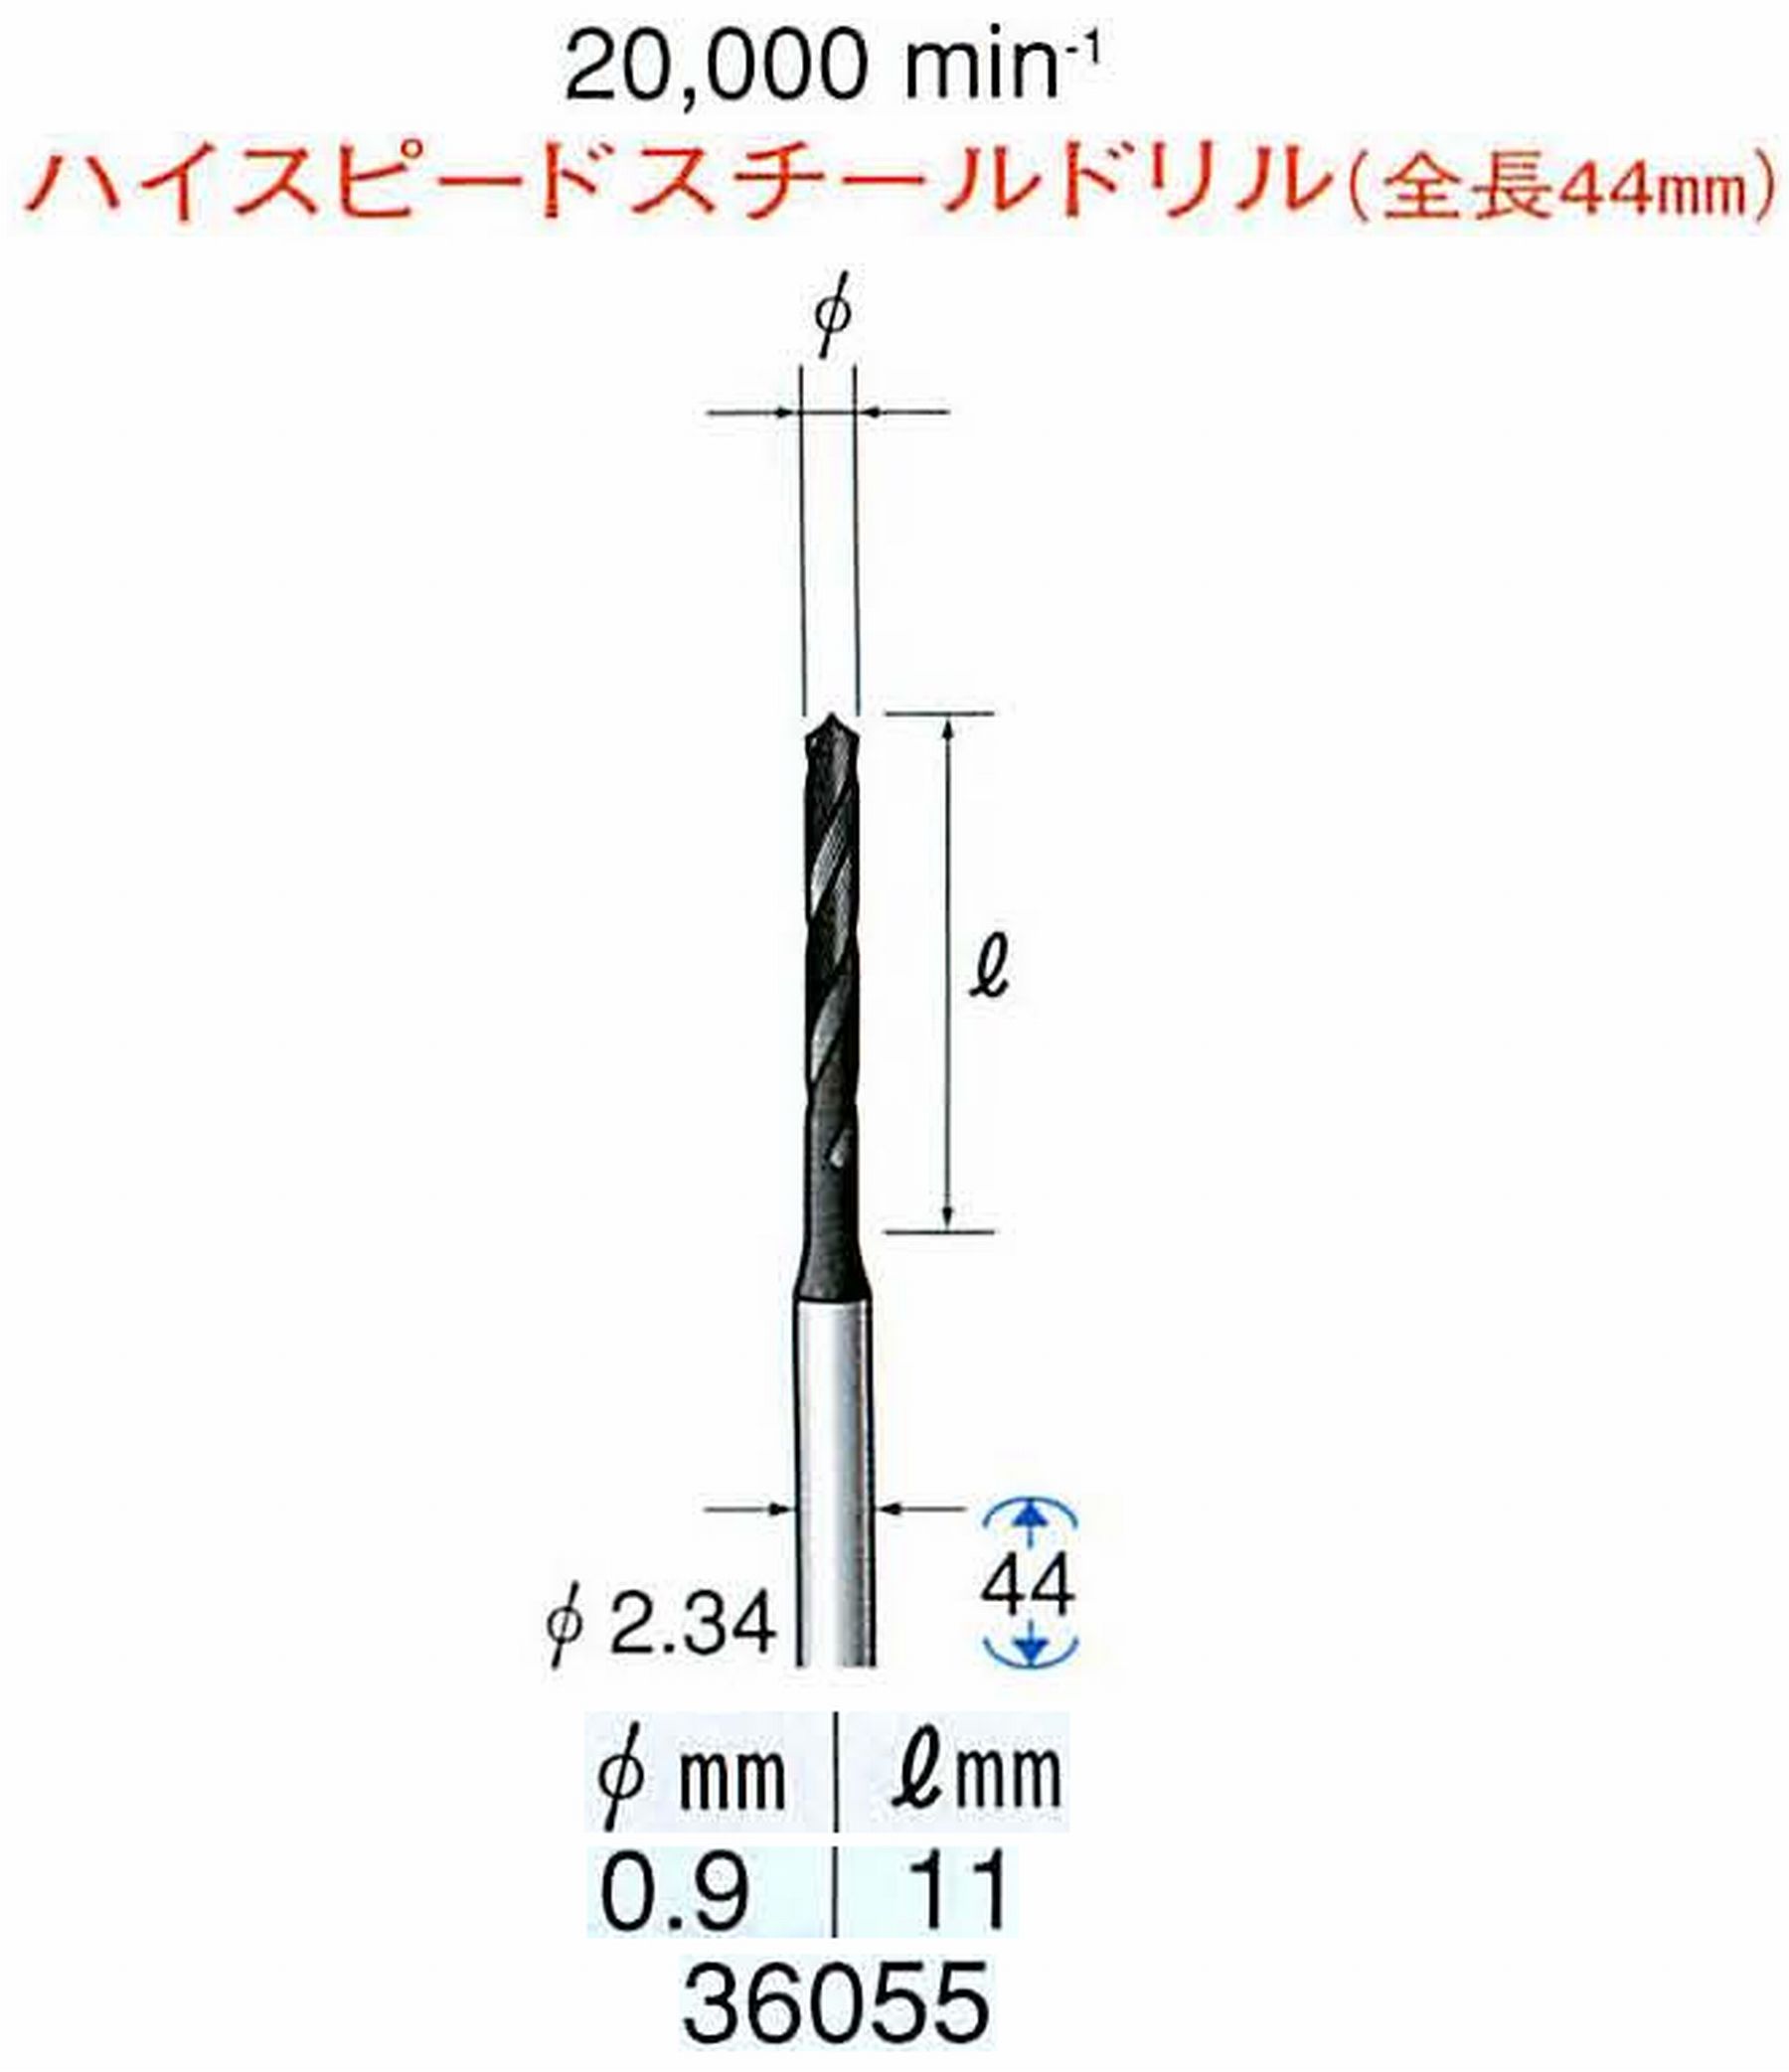 ナカニシ/NAKANISHI ツイストドリル ハイスピードスチール(H.S.S)ドリル(全長44mm) 軸径(シャンク) φ2.34mm 36055